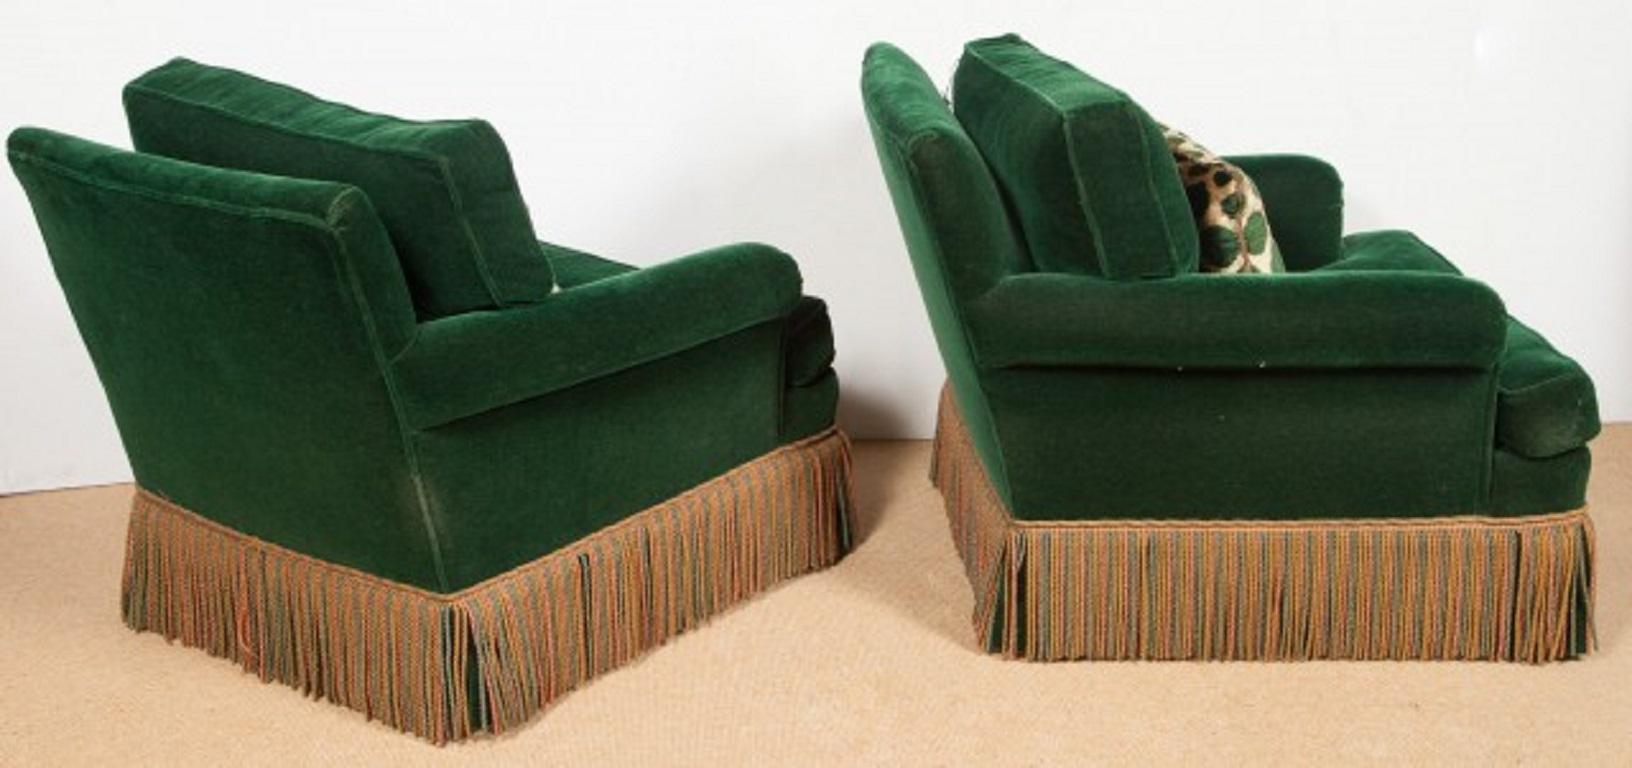 Paire de fauteuils club Art Déco en velours vert des années 1940.  Les chaises ont des jupes à franges et le tissu en velours d'origine. Les oreillers ne sont pas originaux, mais bien faits.  Il y a une paire d'ottomans assortis listés et vendus